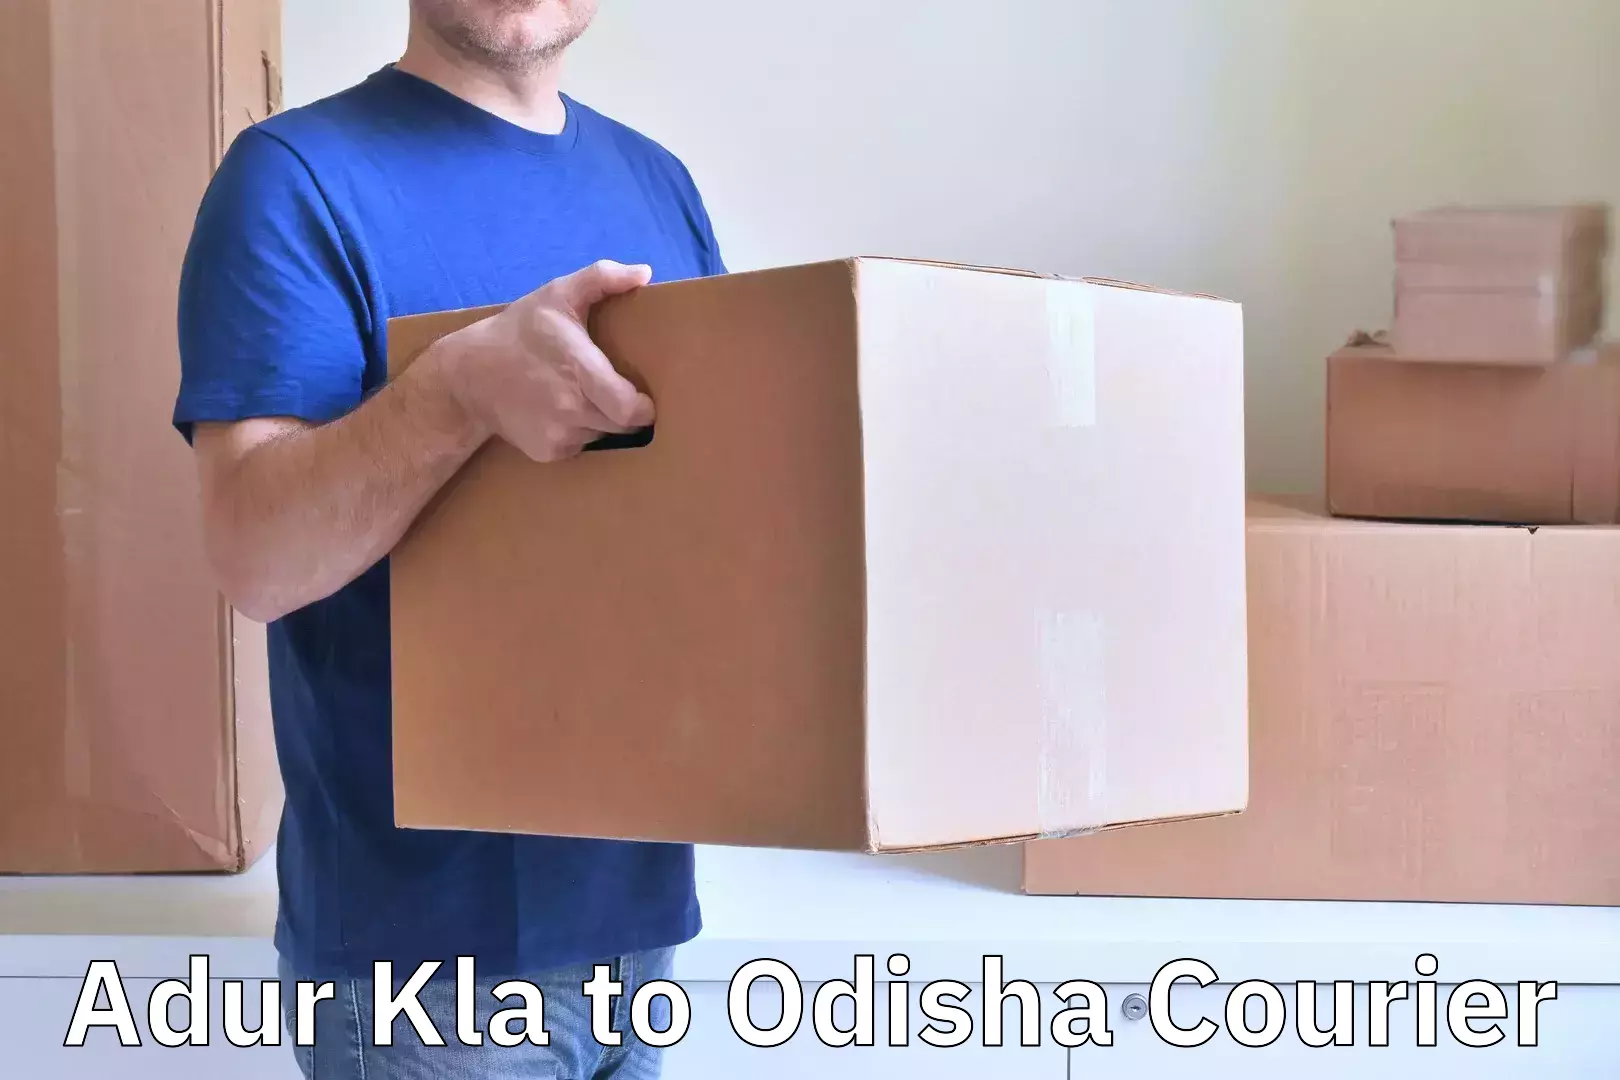 Nationwide luggage courier Adur Kla to Odisha